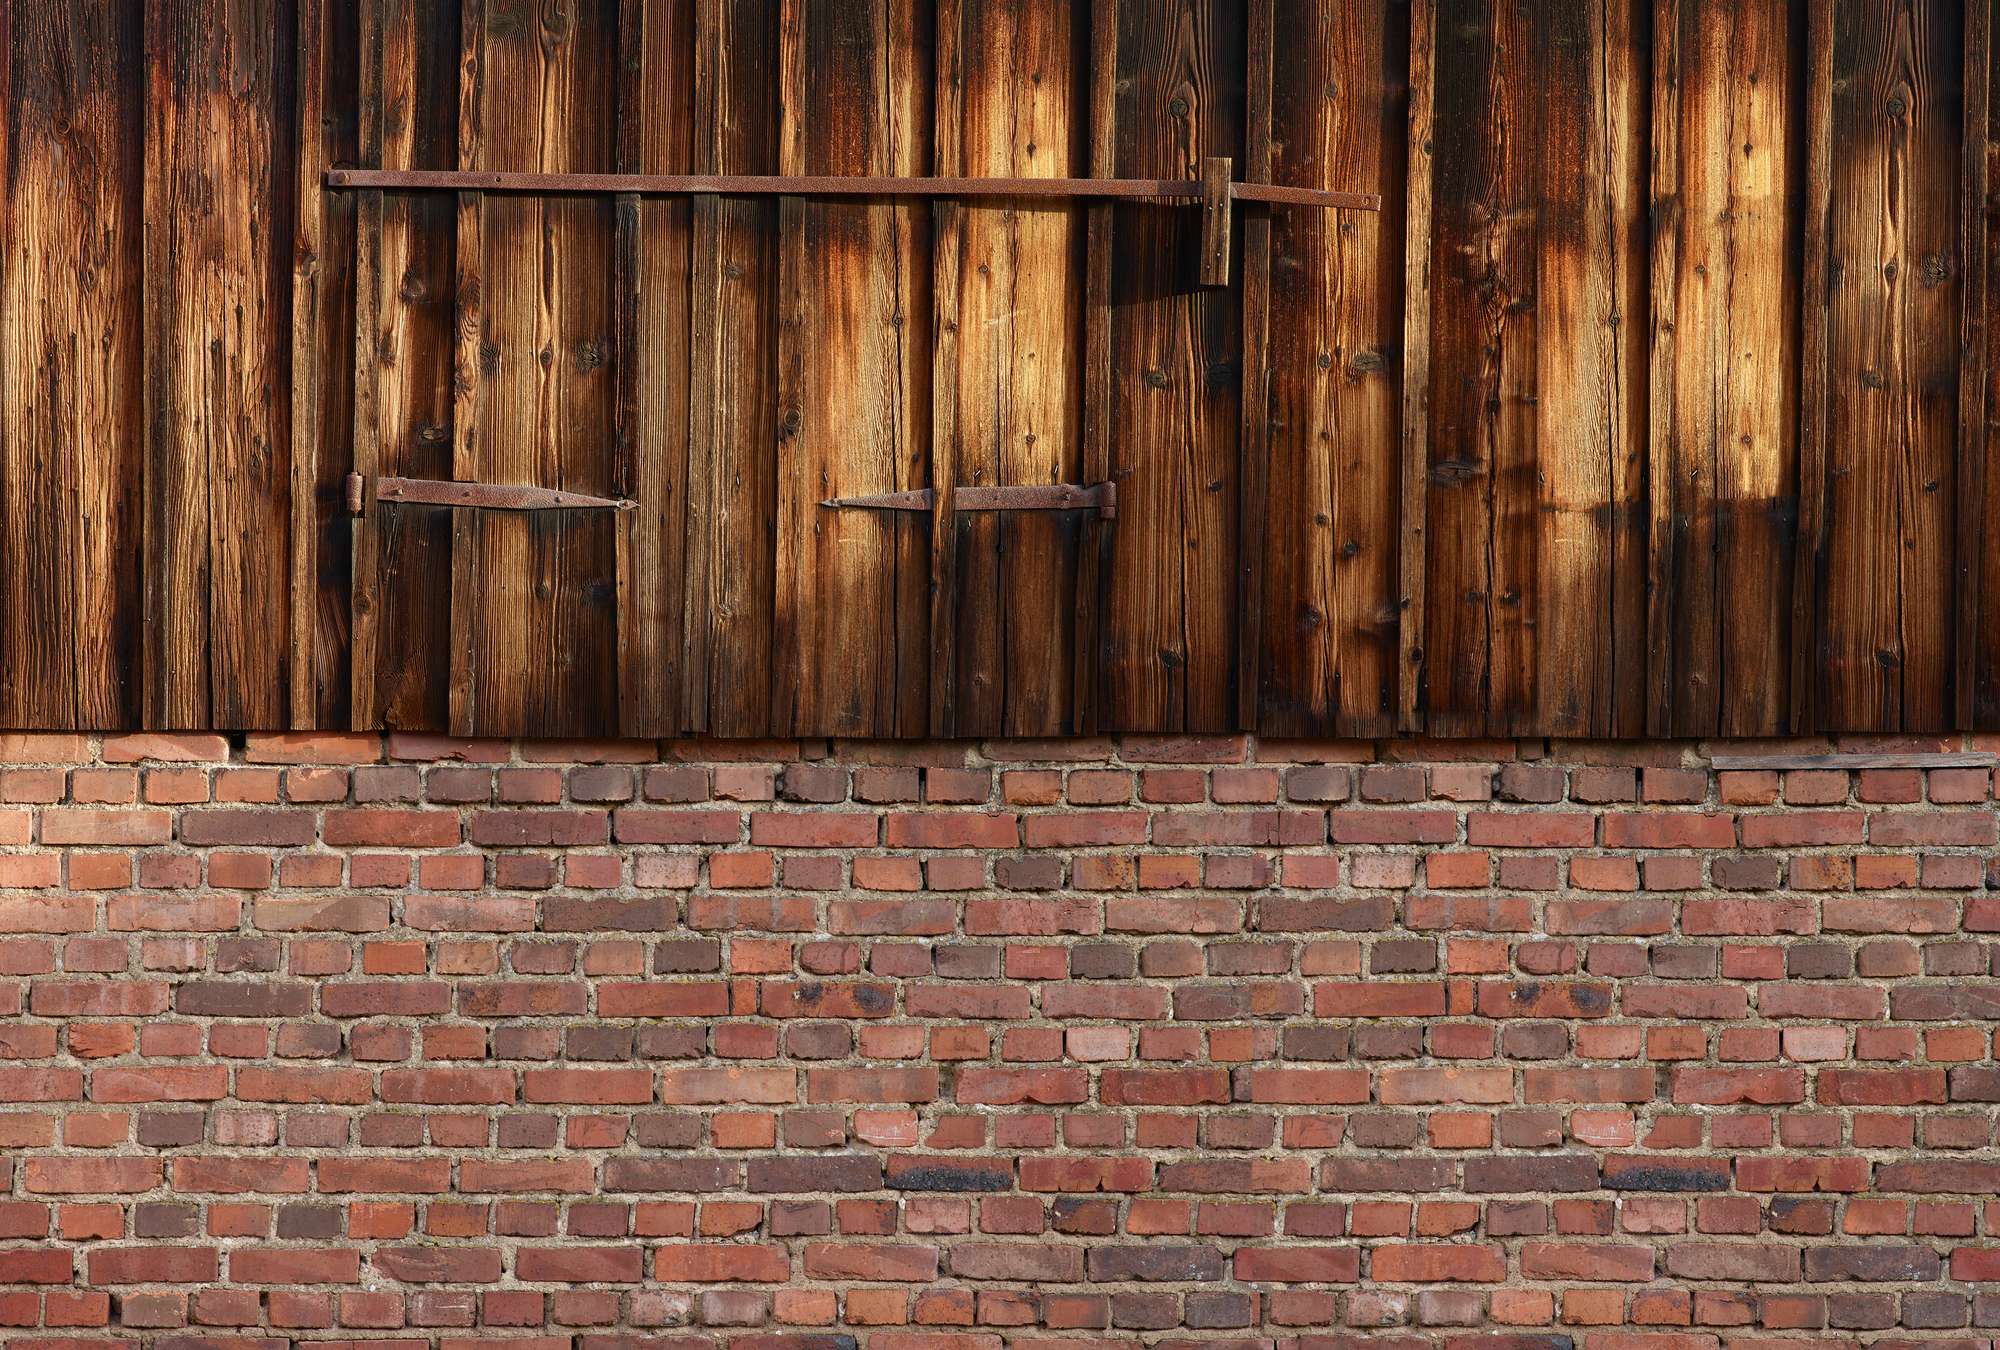             Fototapete rote Ziegelmauer mit Holzvertäfelung
        